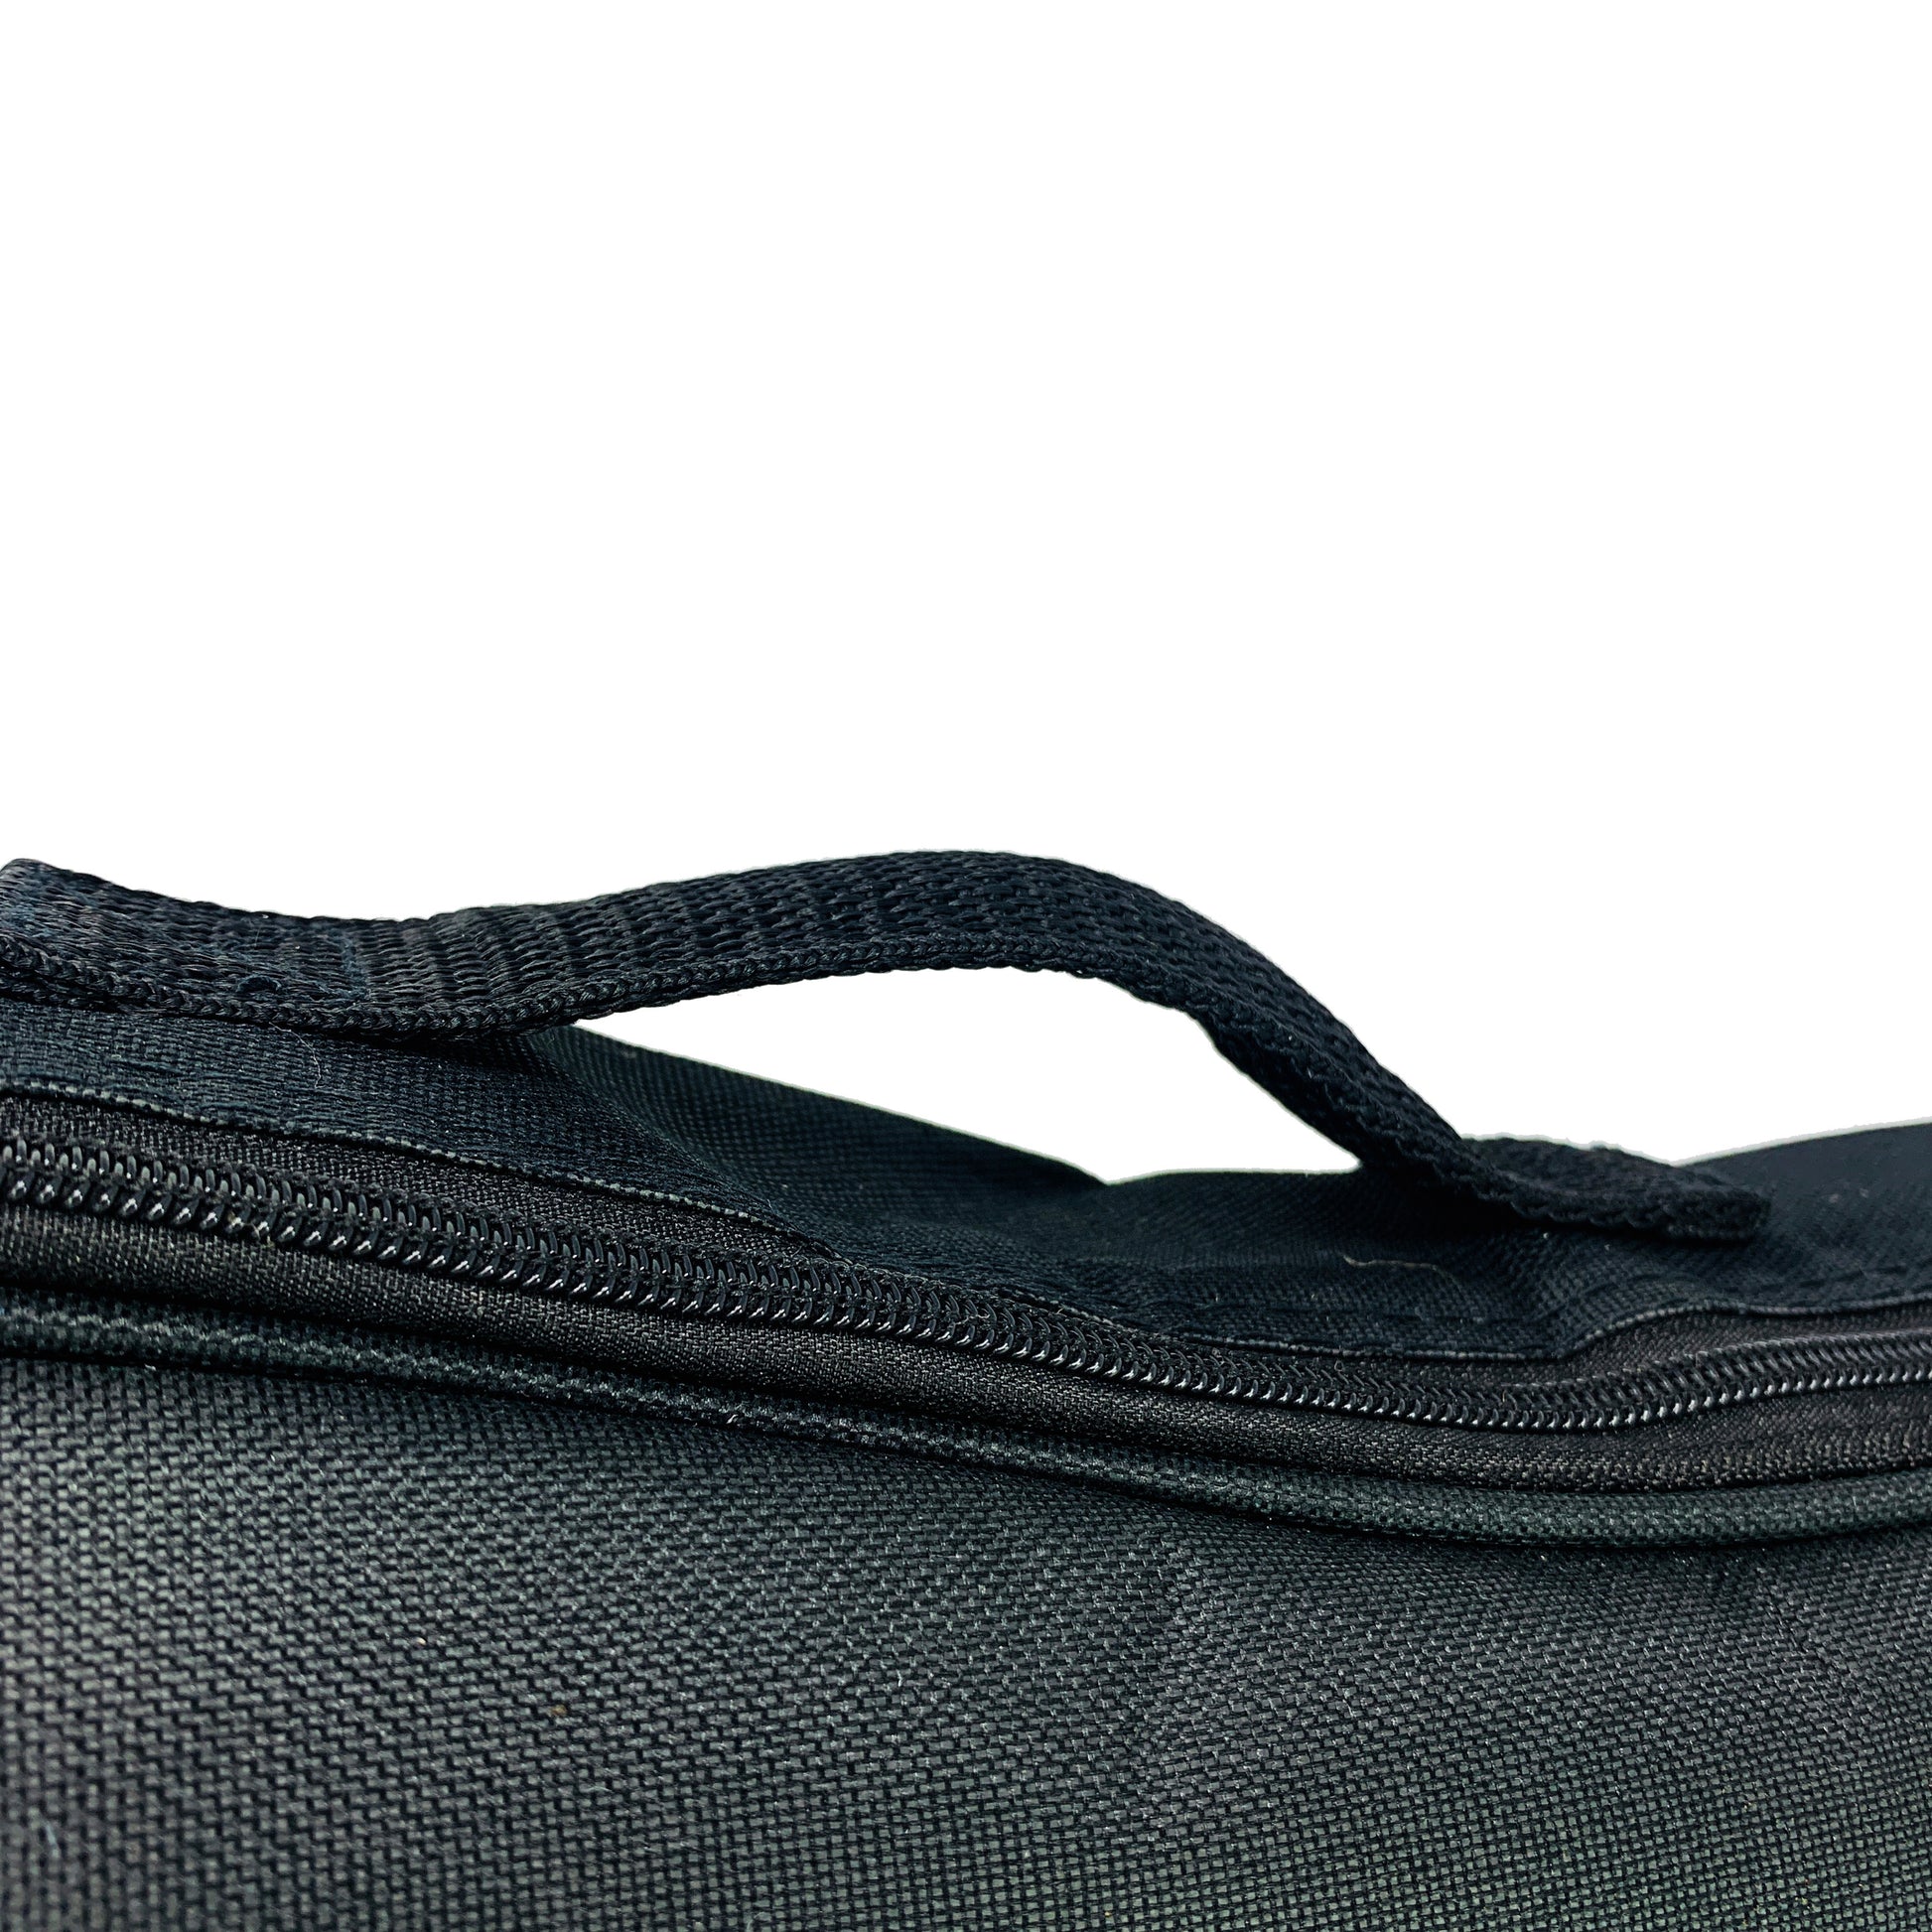 Kalena 5mm Ukulele Gig bag with flat pocket - Kalena Instruments /  Black